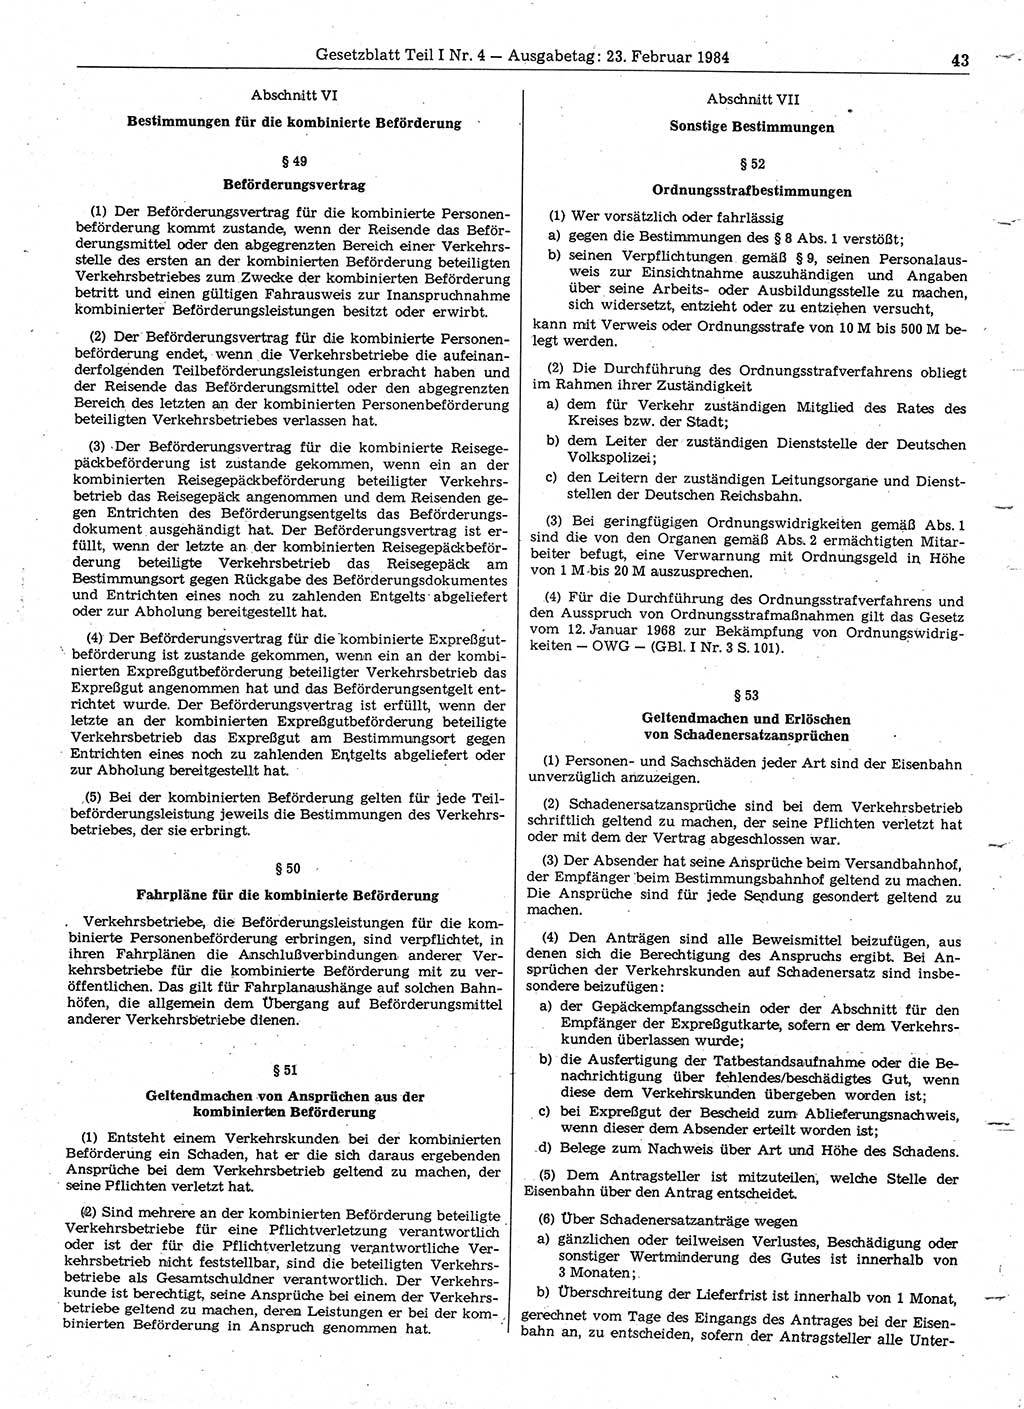 Gesetzblatt (GBl.) der Deutschen Demokratischen Republik (DDR) Teil Ⅰ 1984, Seite 43 (GBl. DDR Ⅰ 1984, S. 43)